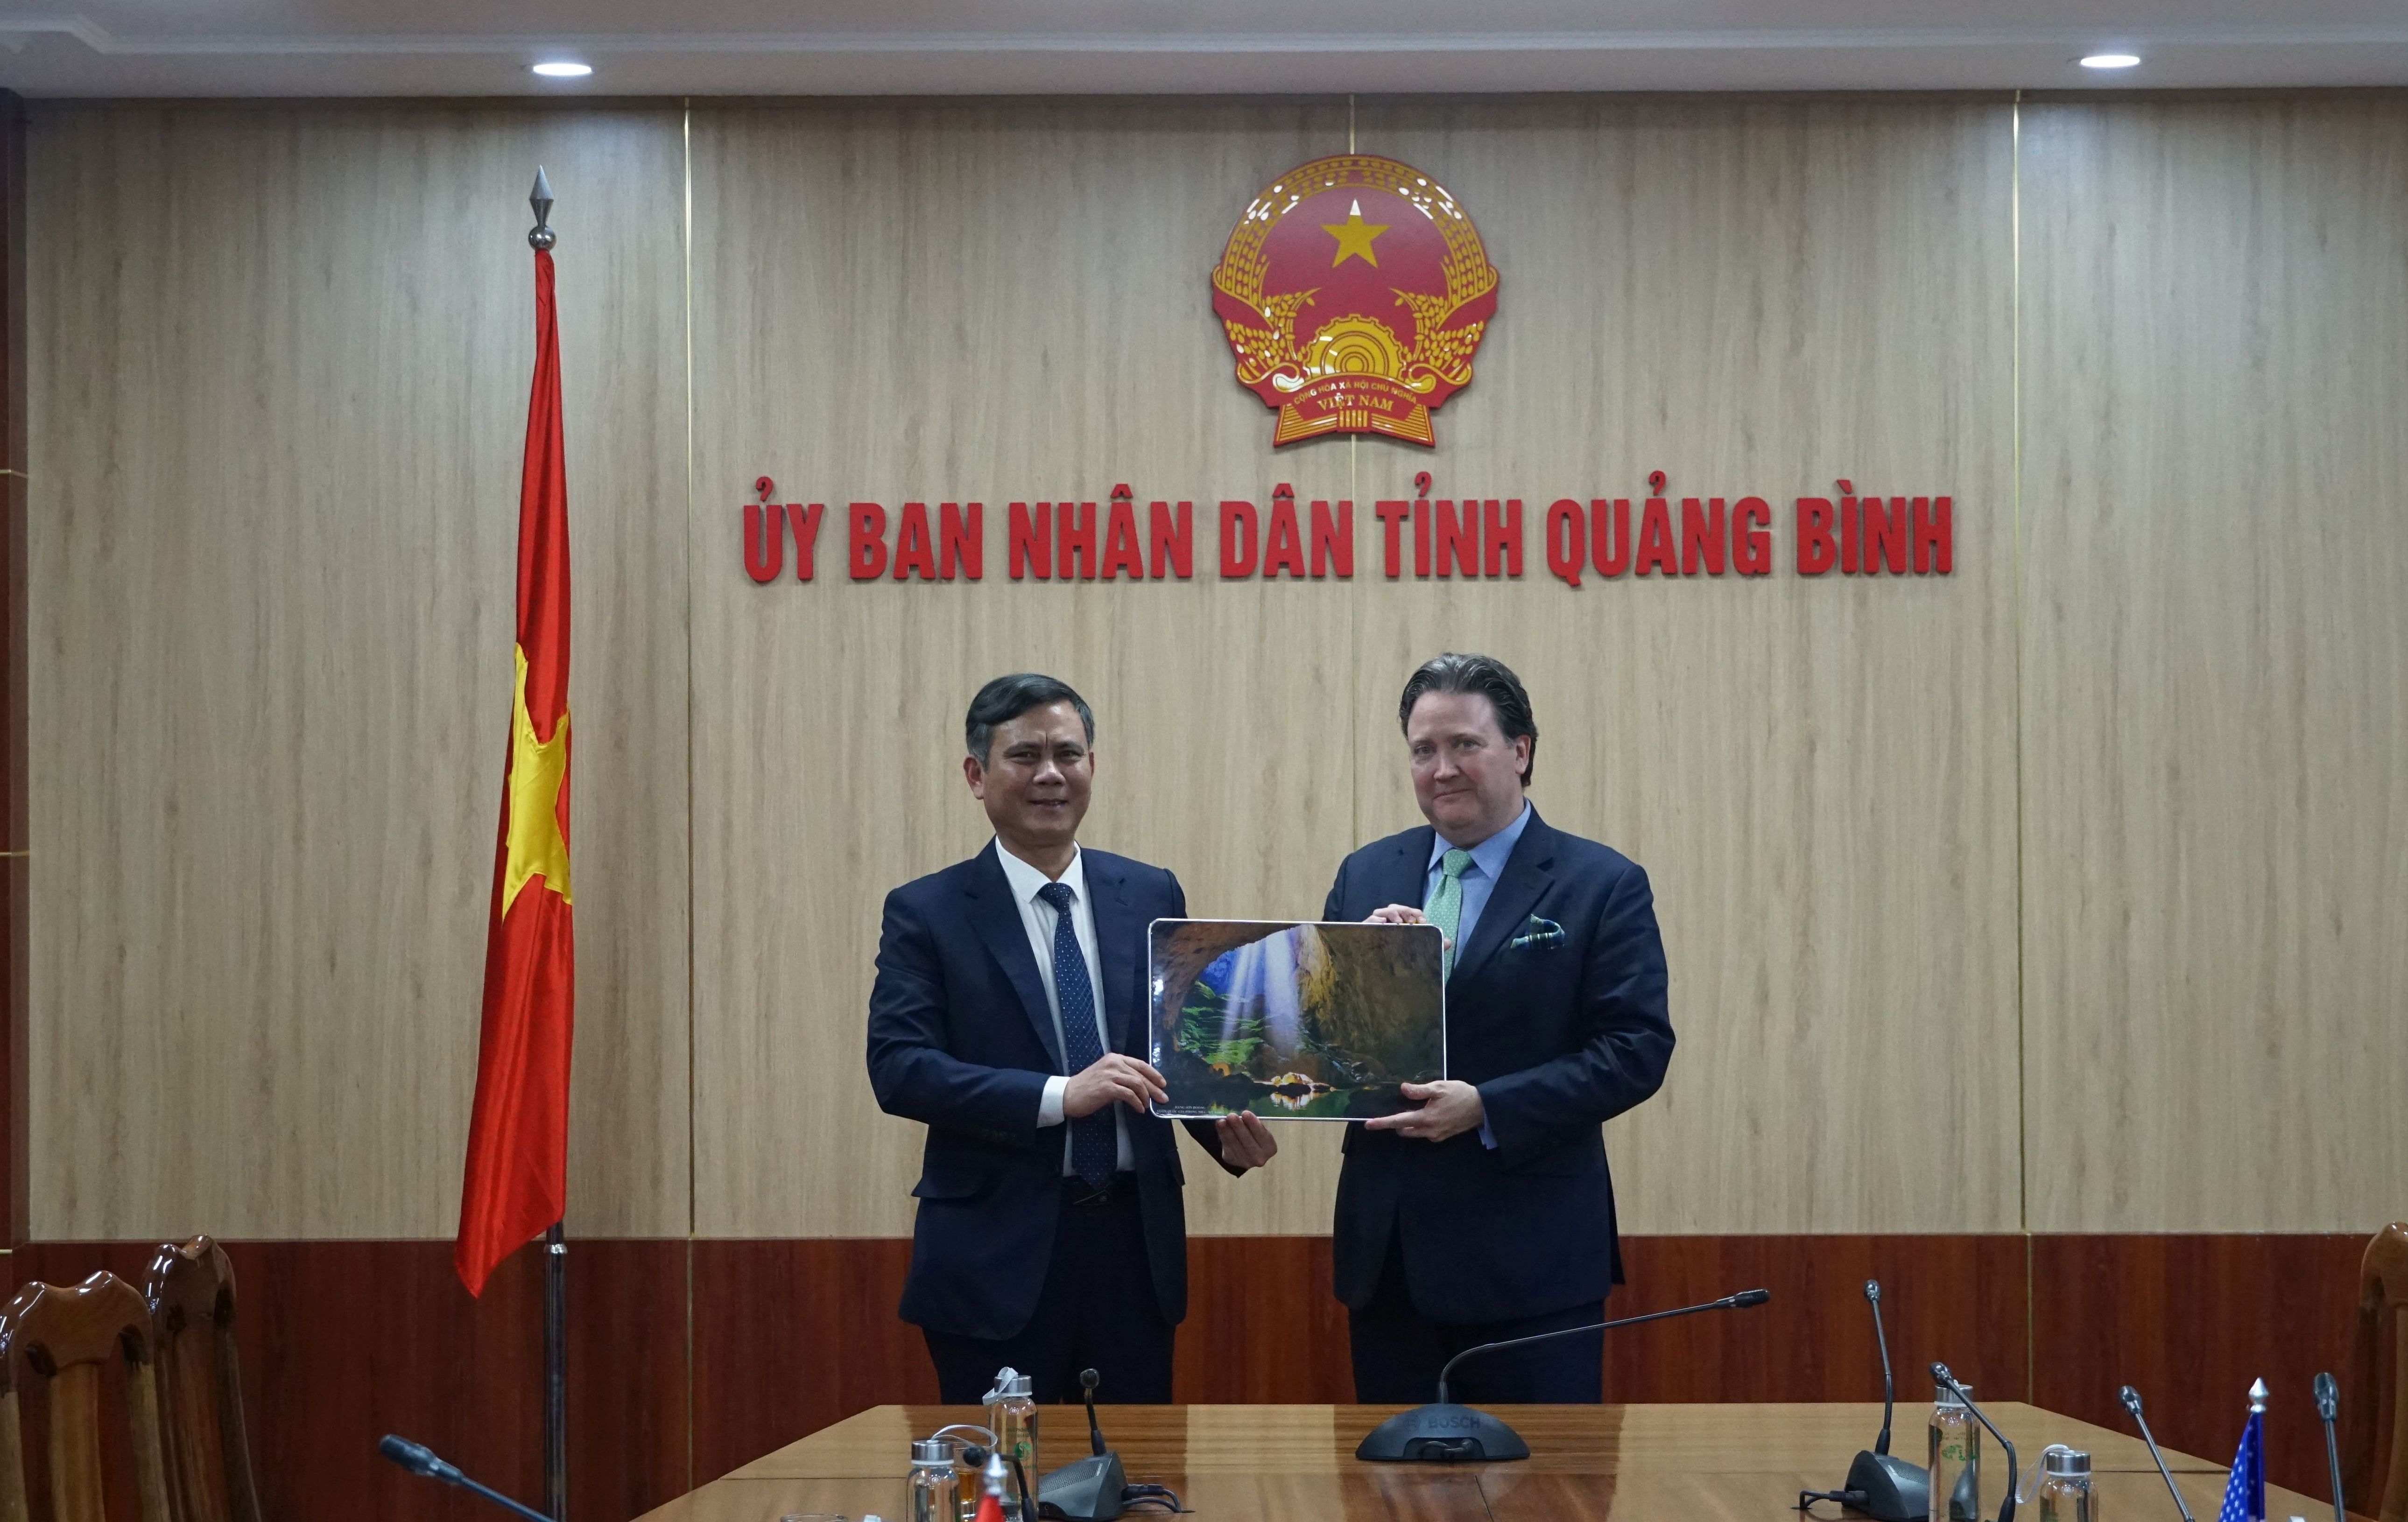 Đồng chí Chủ tịch UBND tỉnh Trần Thắng tặng ngài Đại sứ Marc E. Knapper bức tranh hang Sơn Đoòng.